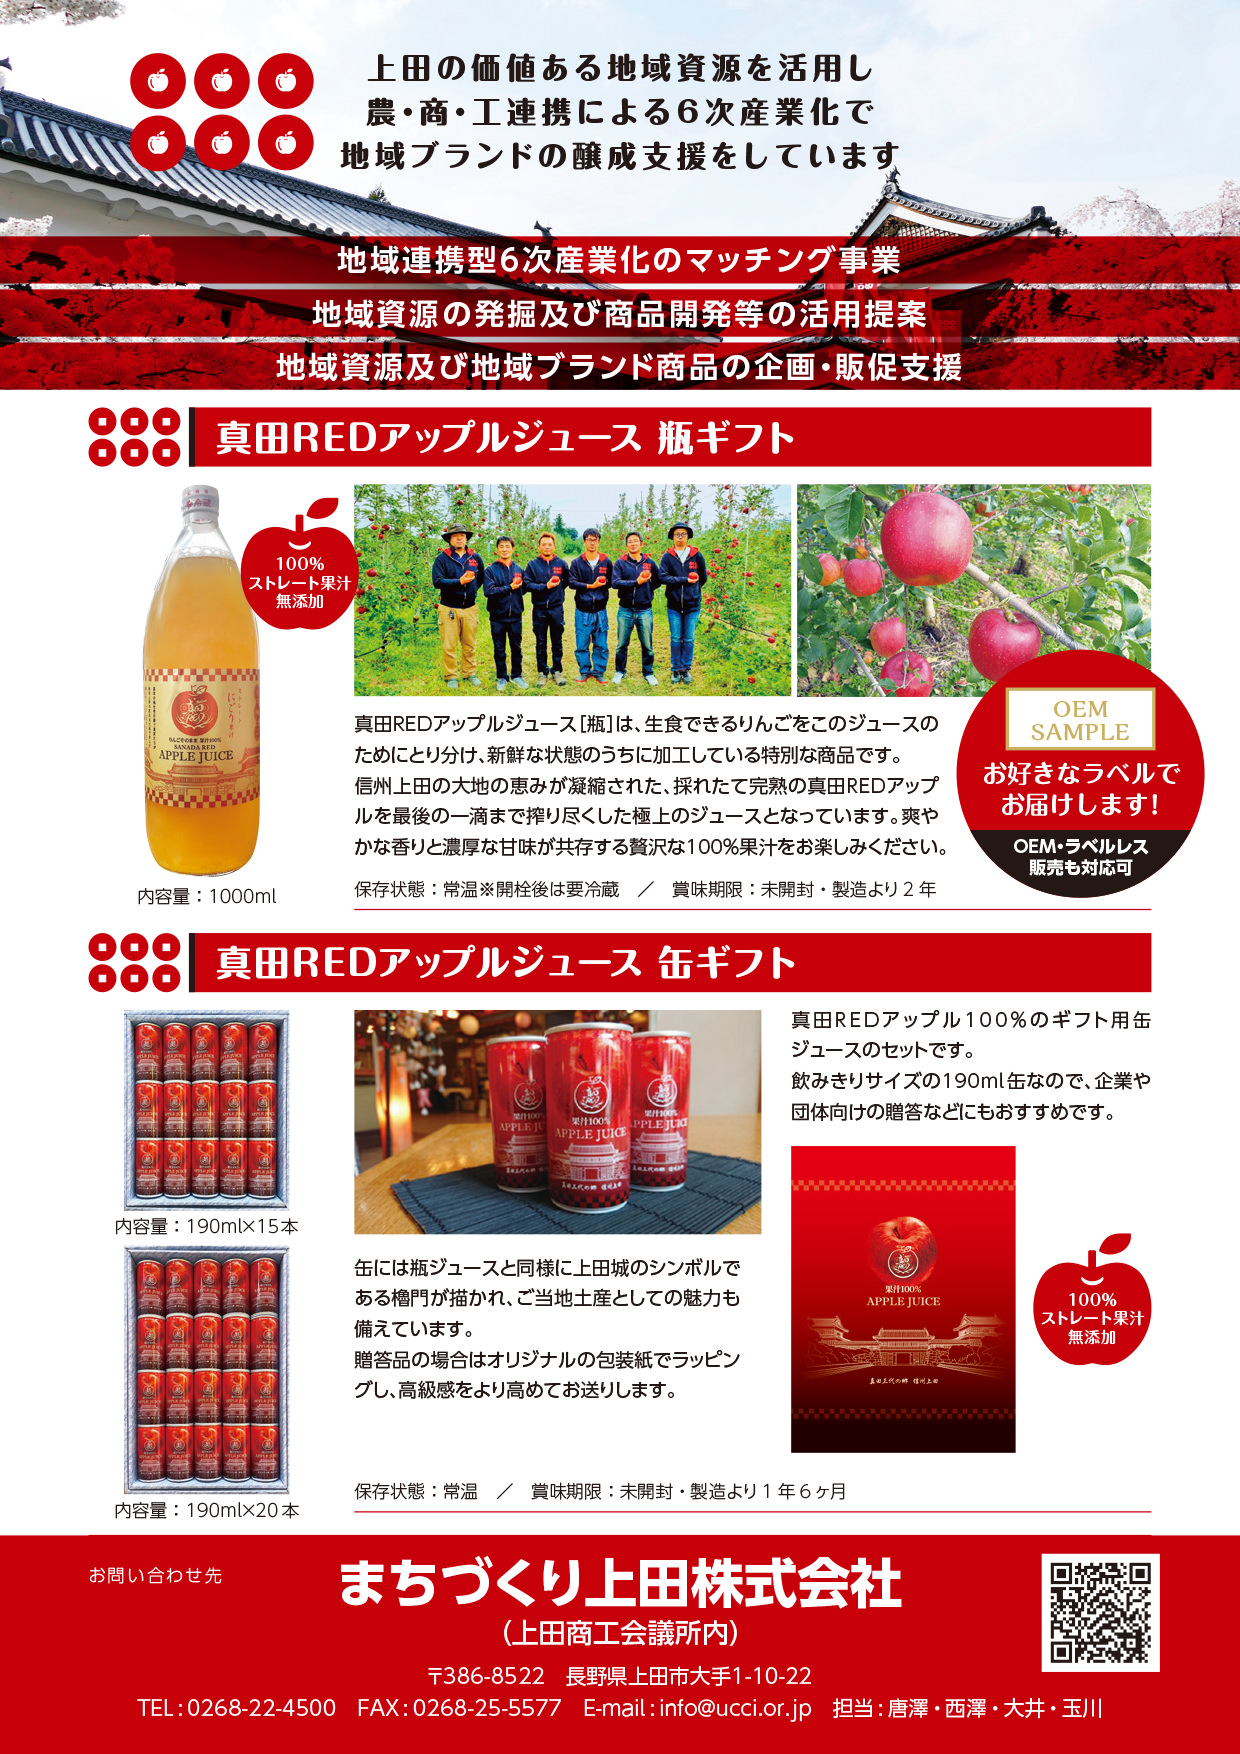 上田の価値ある地域資源を活用し、農・商・工連携による6次産業化で地域ブランドの醸成支援をしています